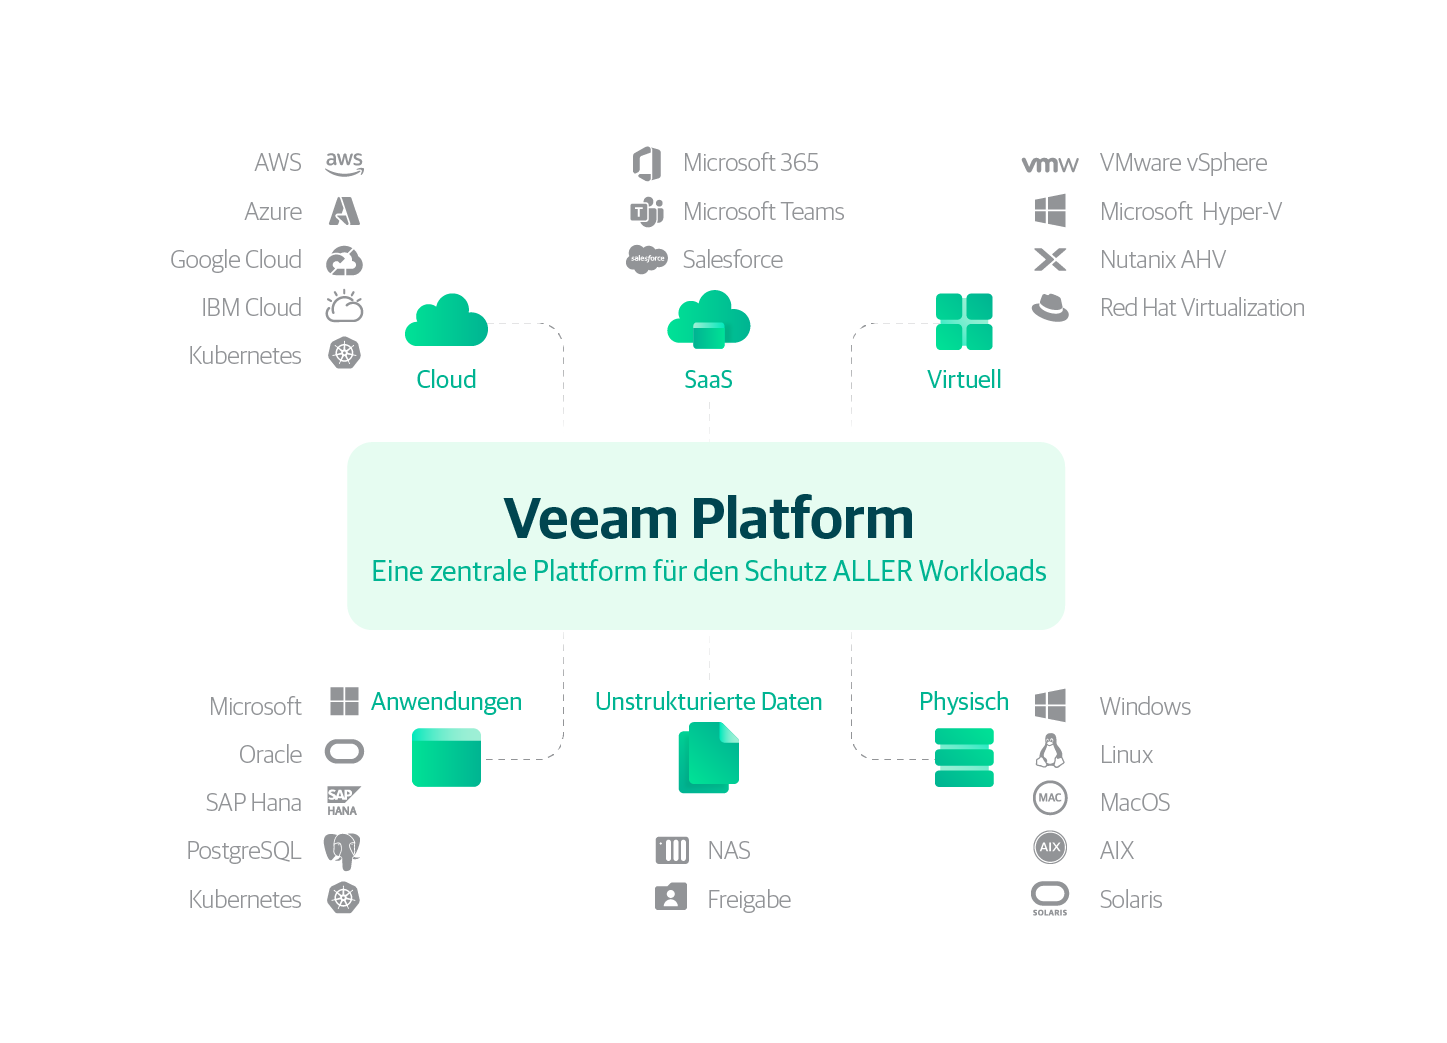 Veeam Platform - Eine zentrale Plattform für den Schutz ALLER Workloads